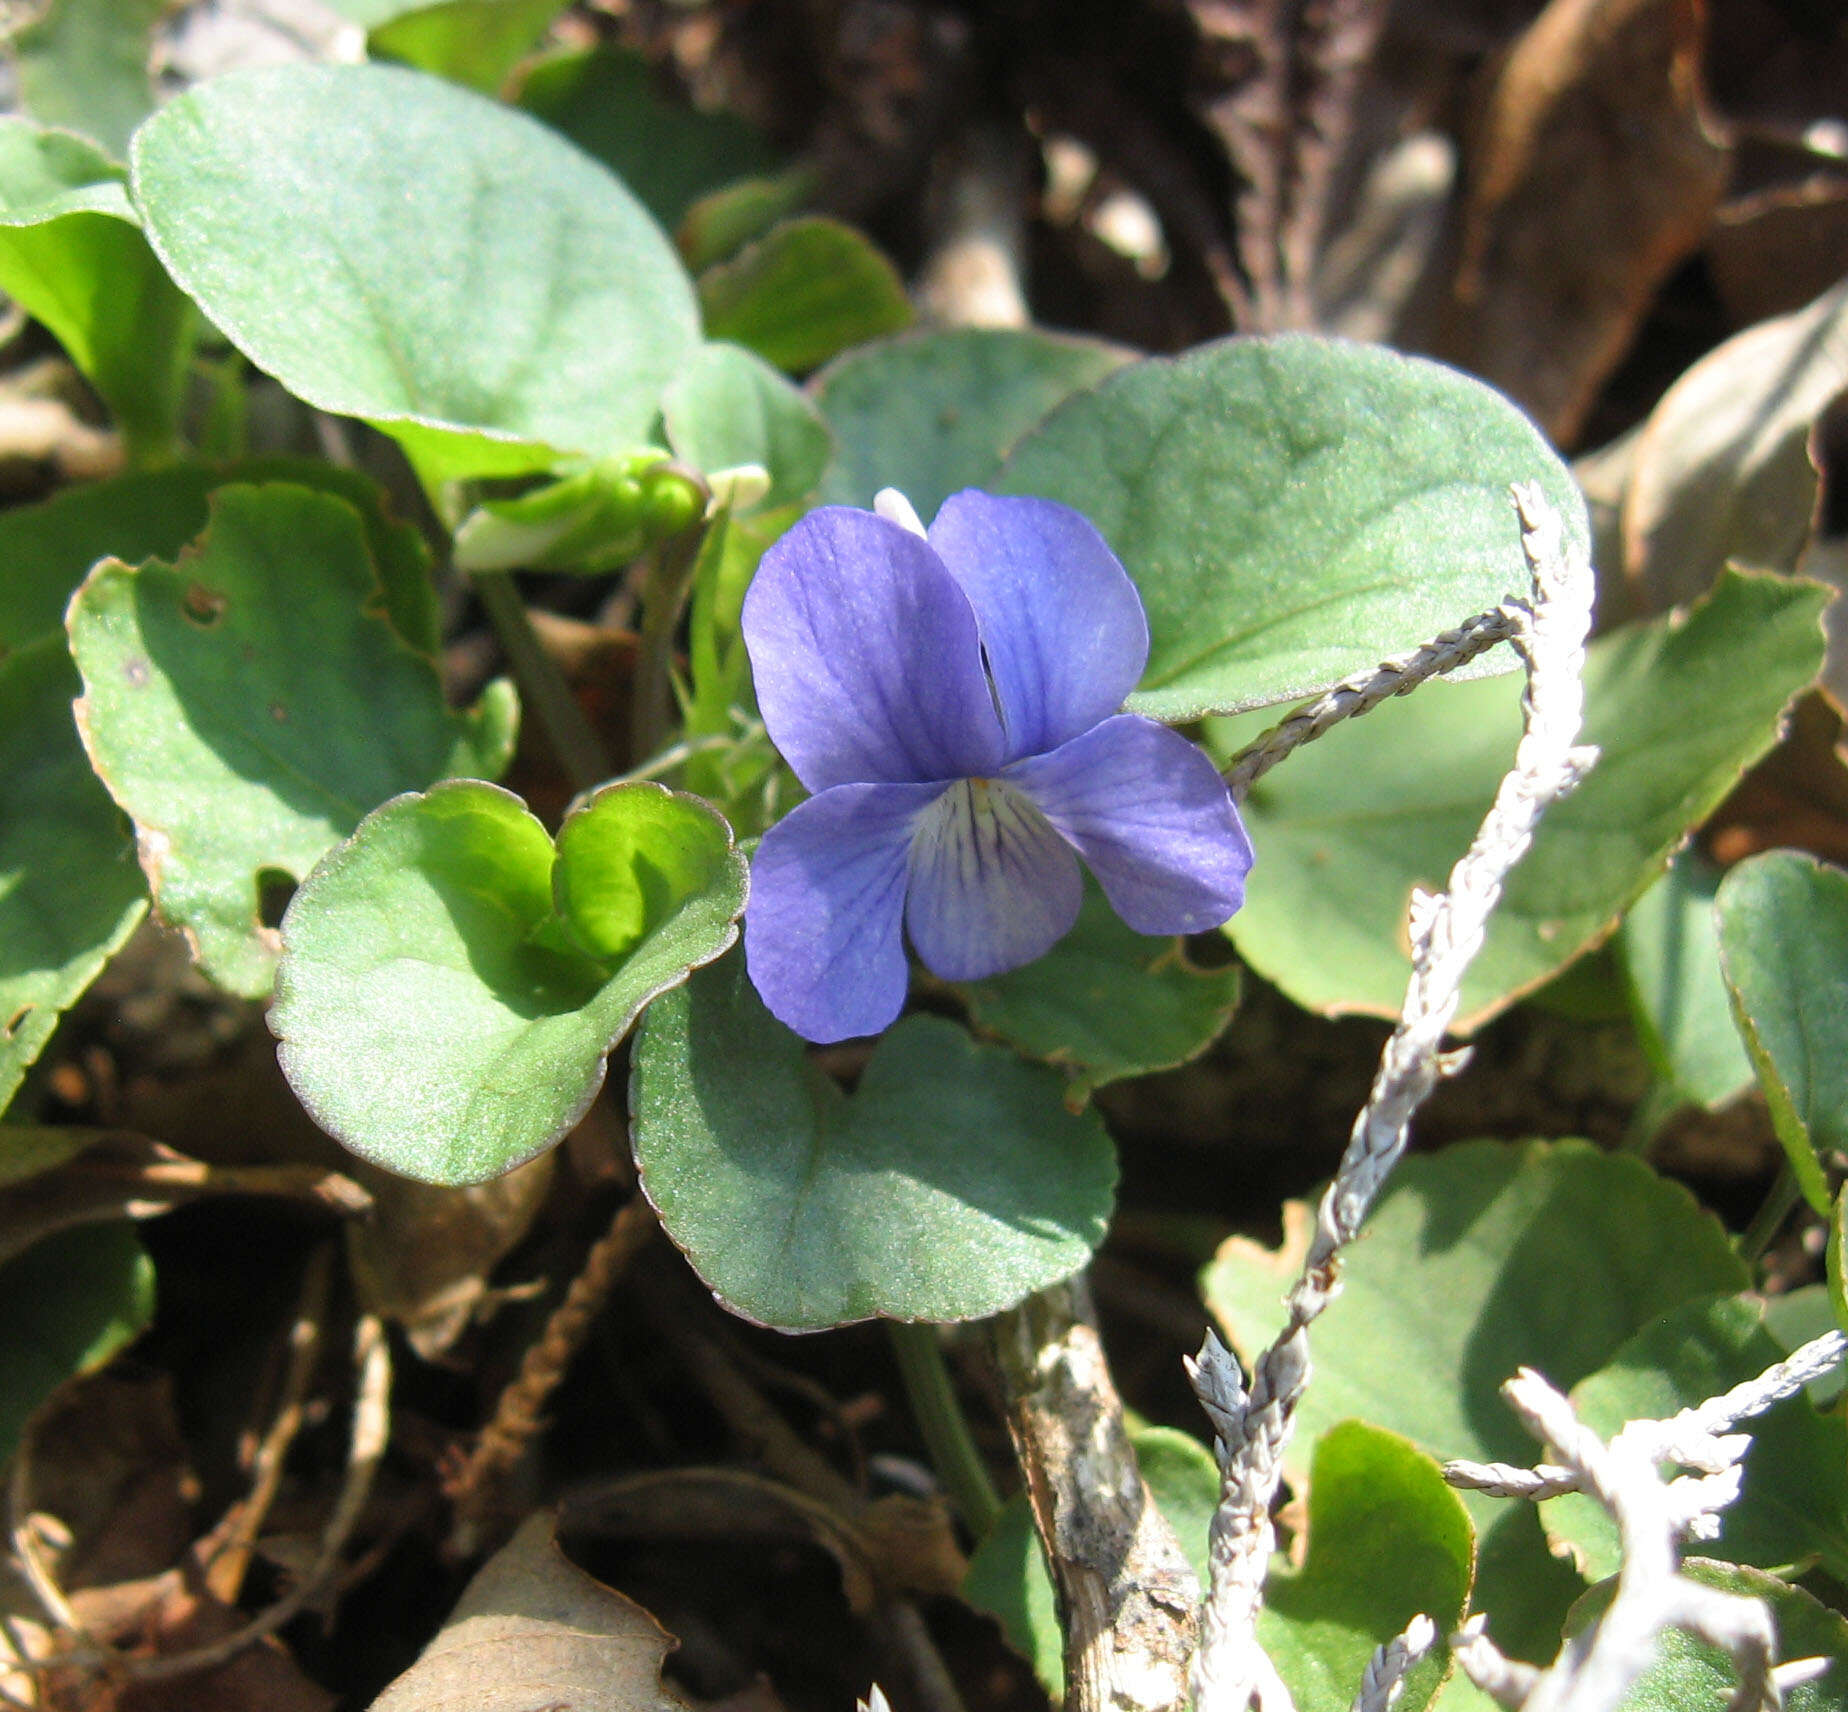 Image of prostrate blue violet